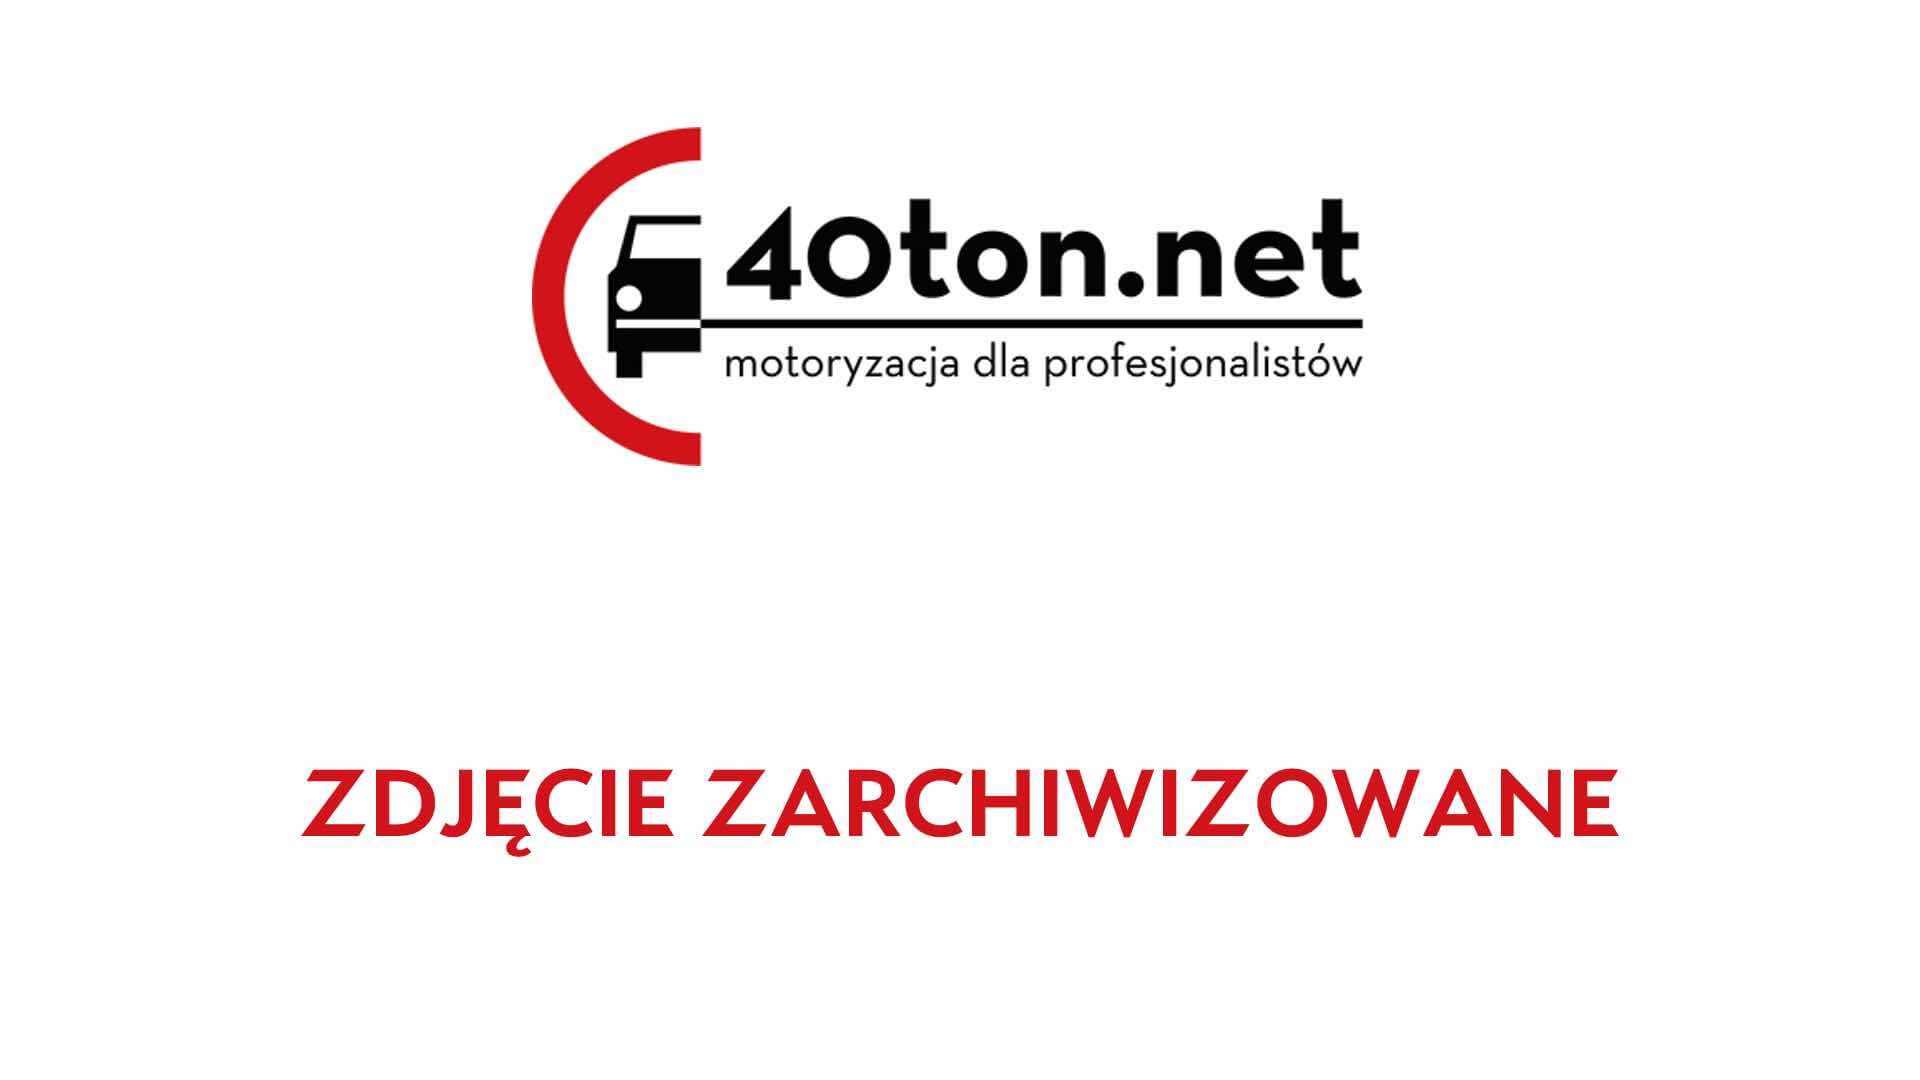 polskie_ciezarowki_40ton_truckspotters_1311